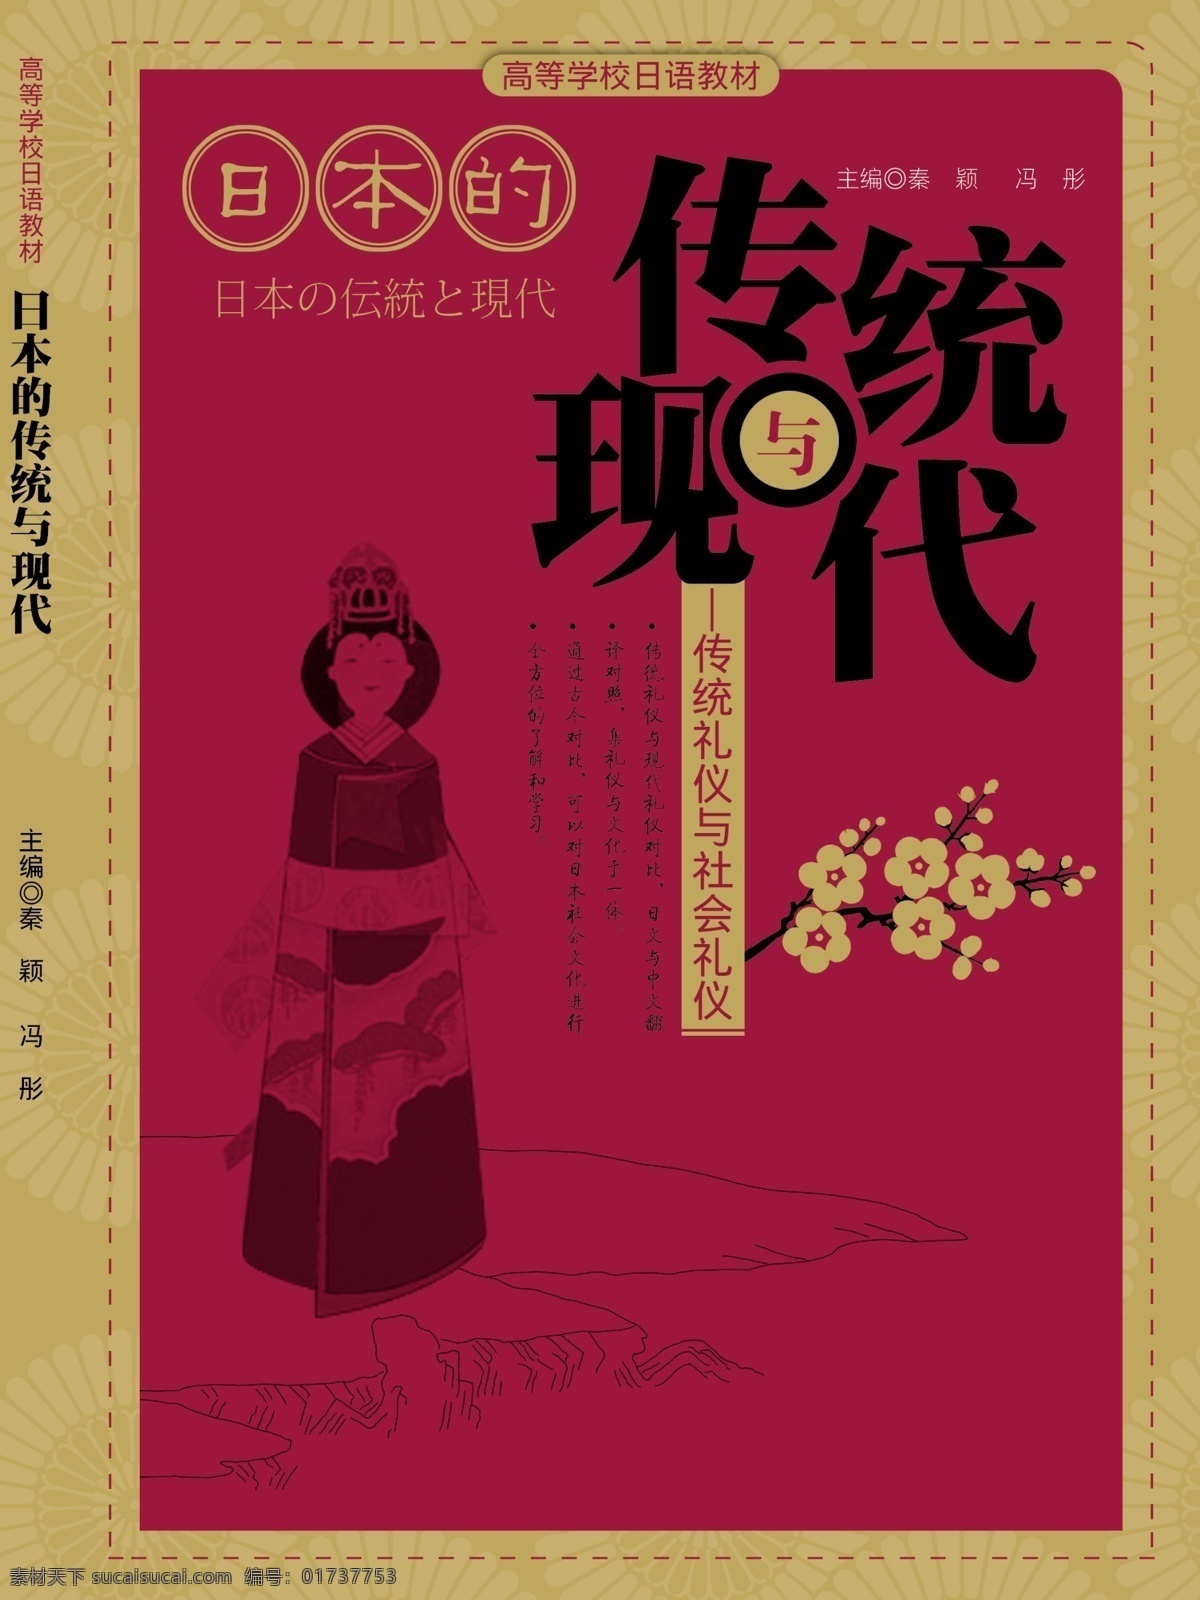 日语 封面 传统封面 千图网 古代风格 原创设计 原创画册